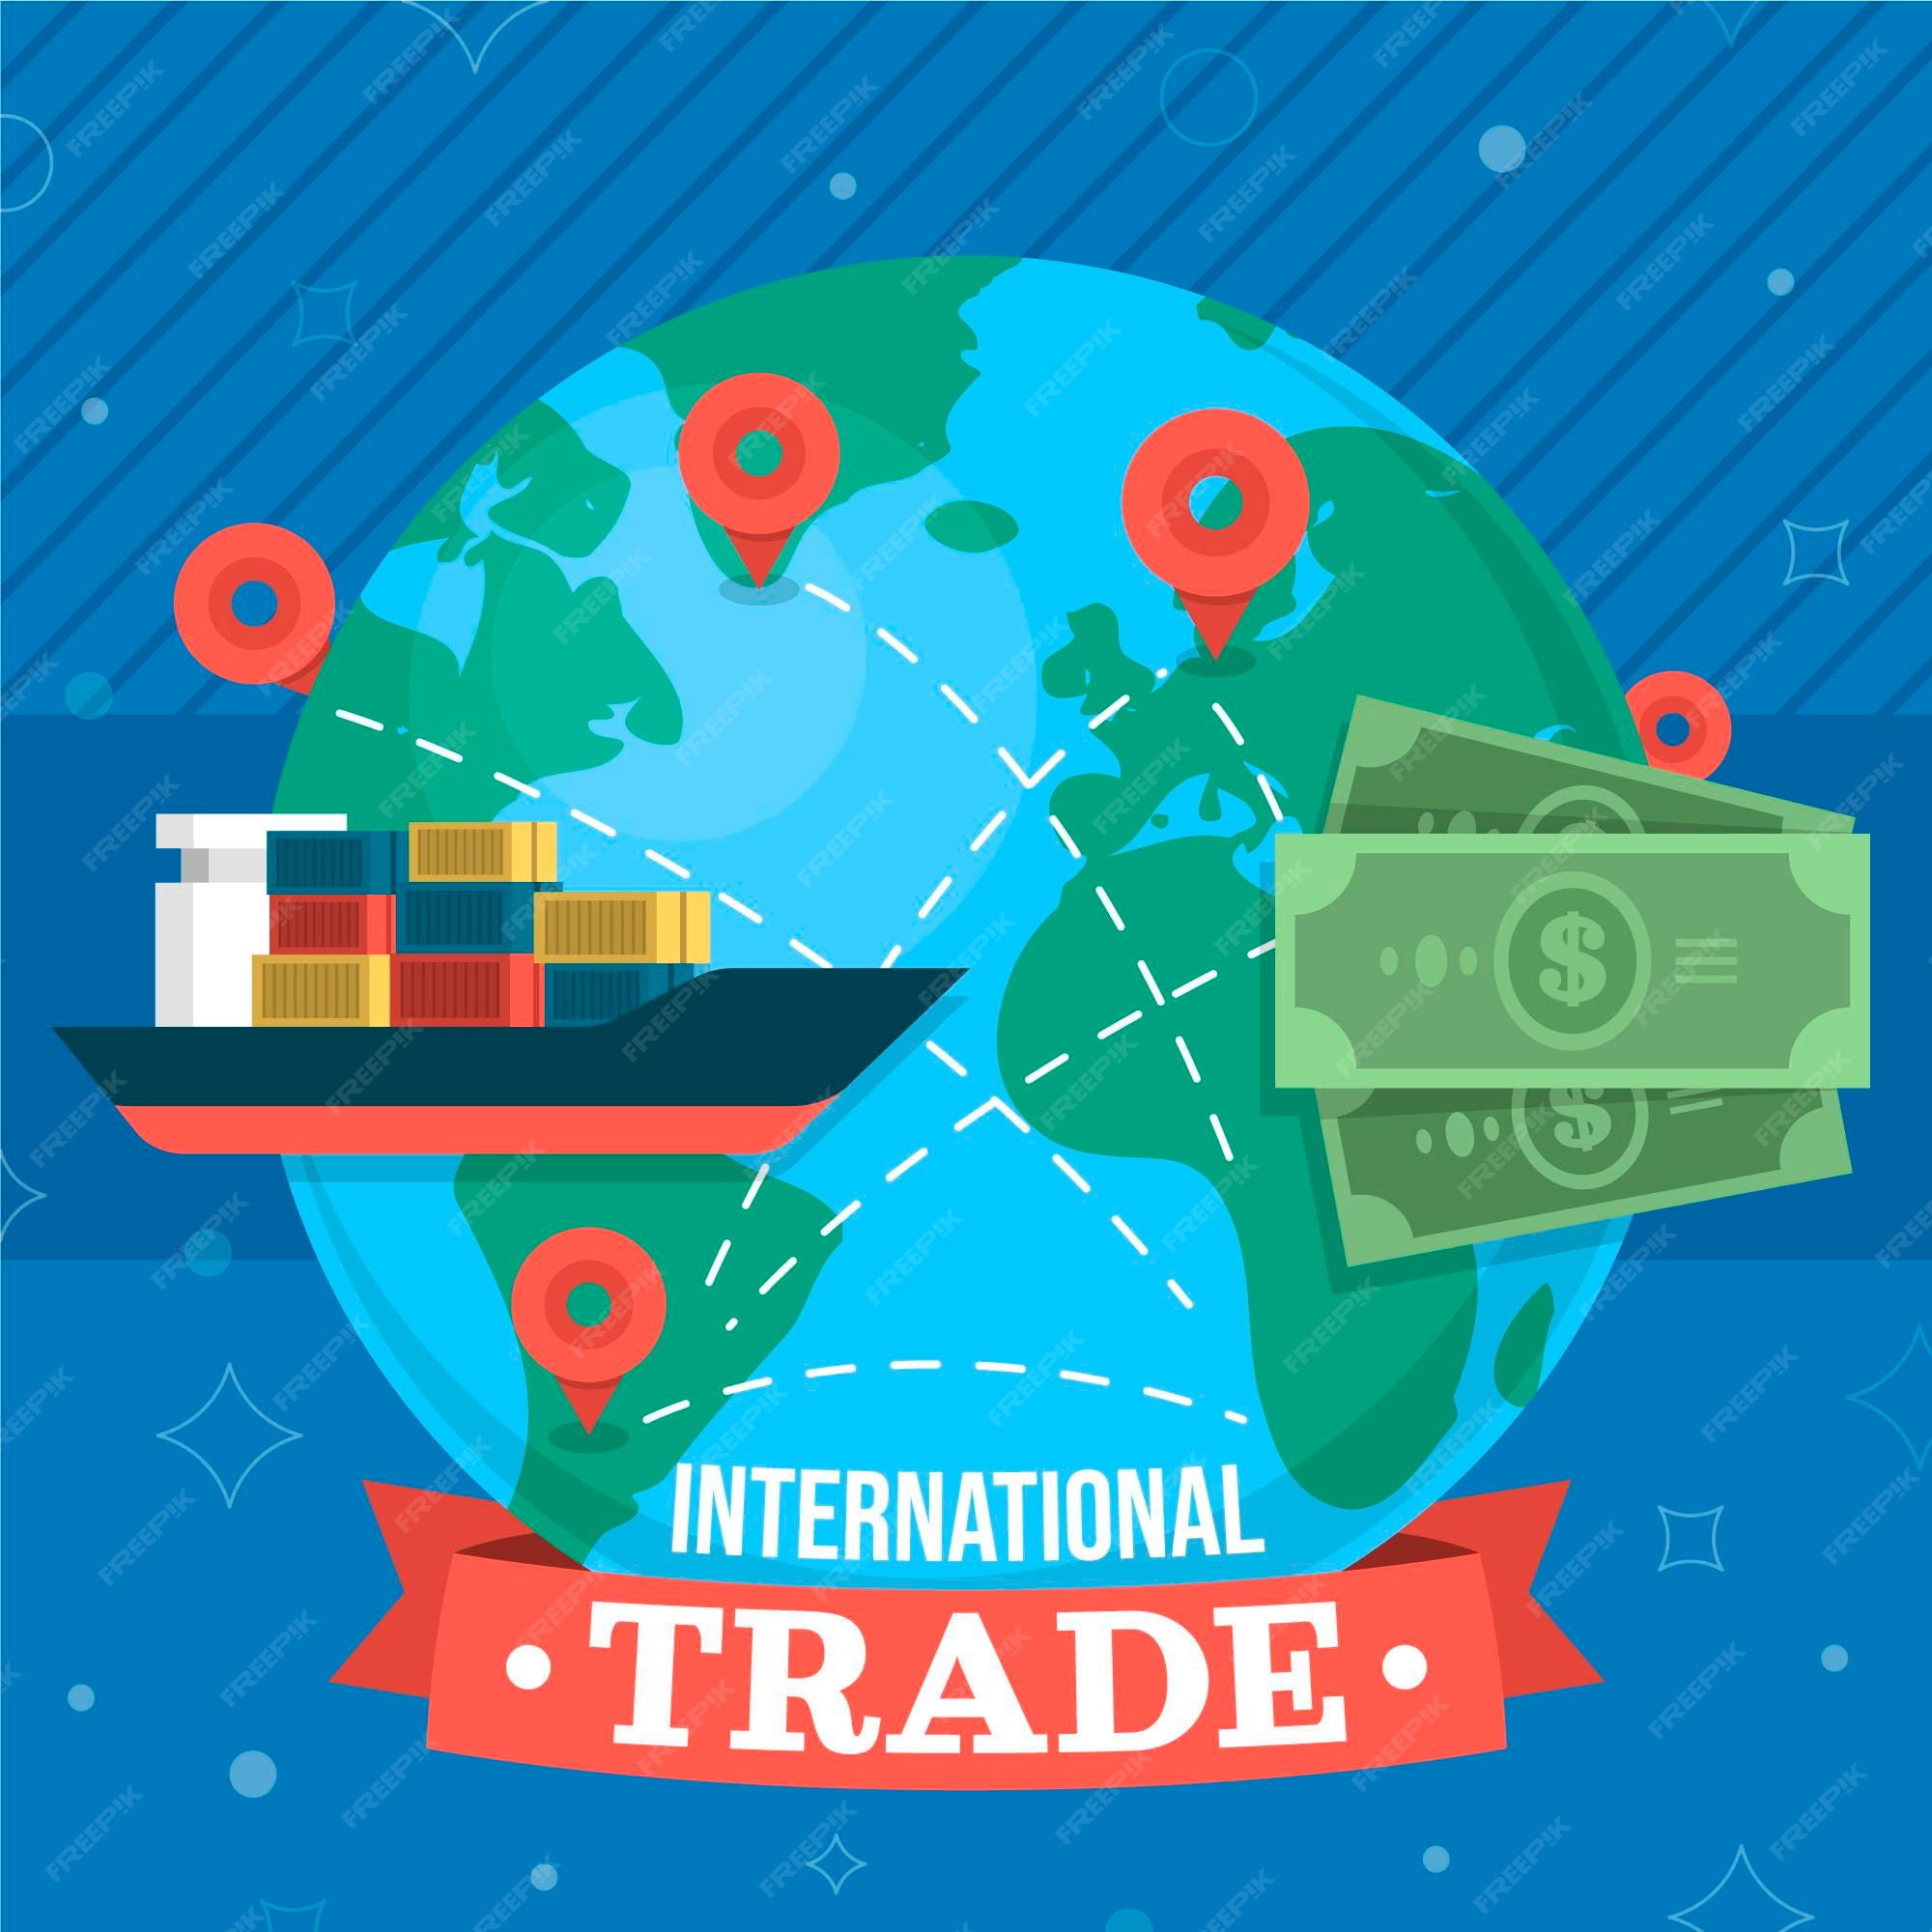 Imágenes de Comercio Internacional - Descarga gratuita en Freepik